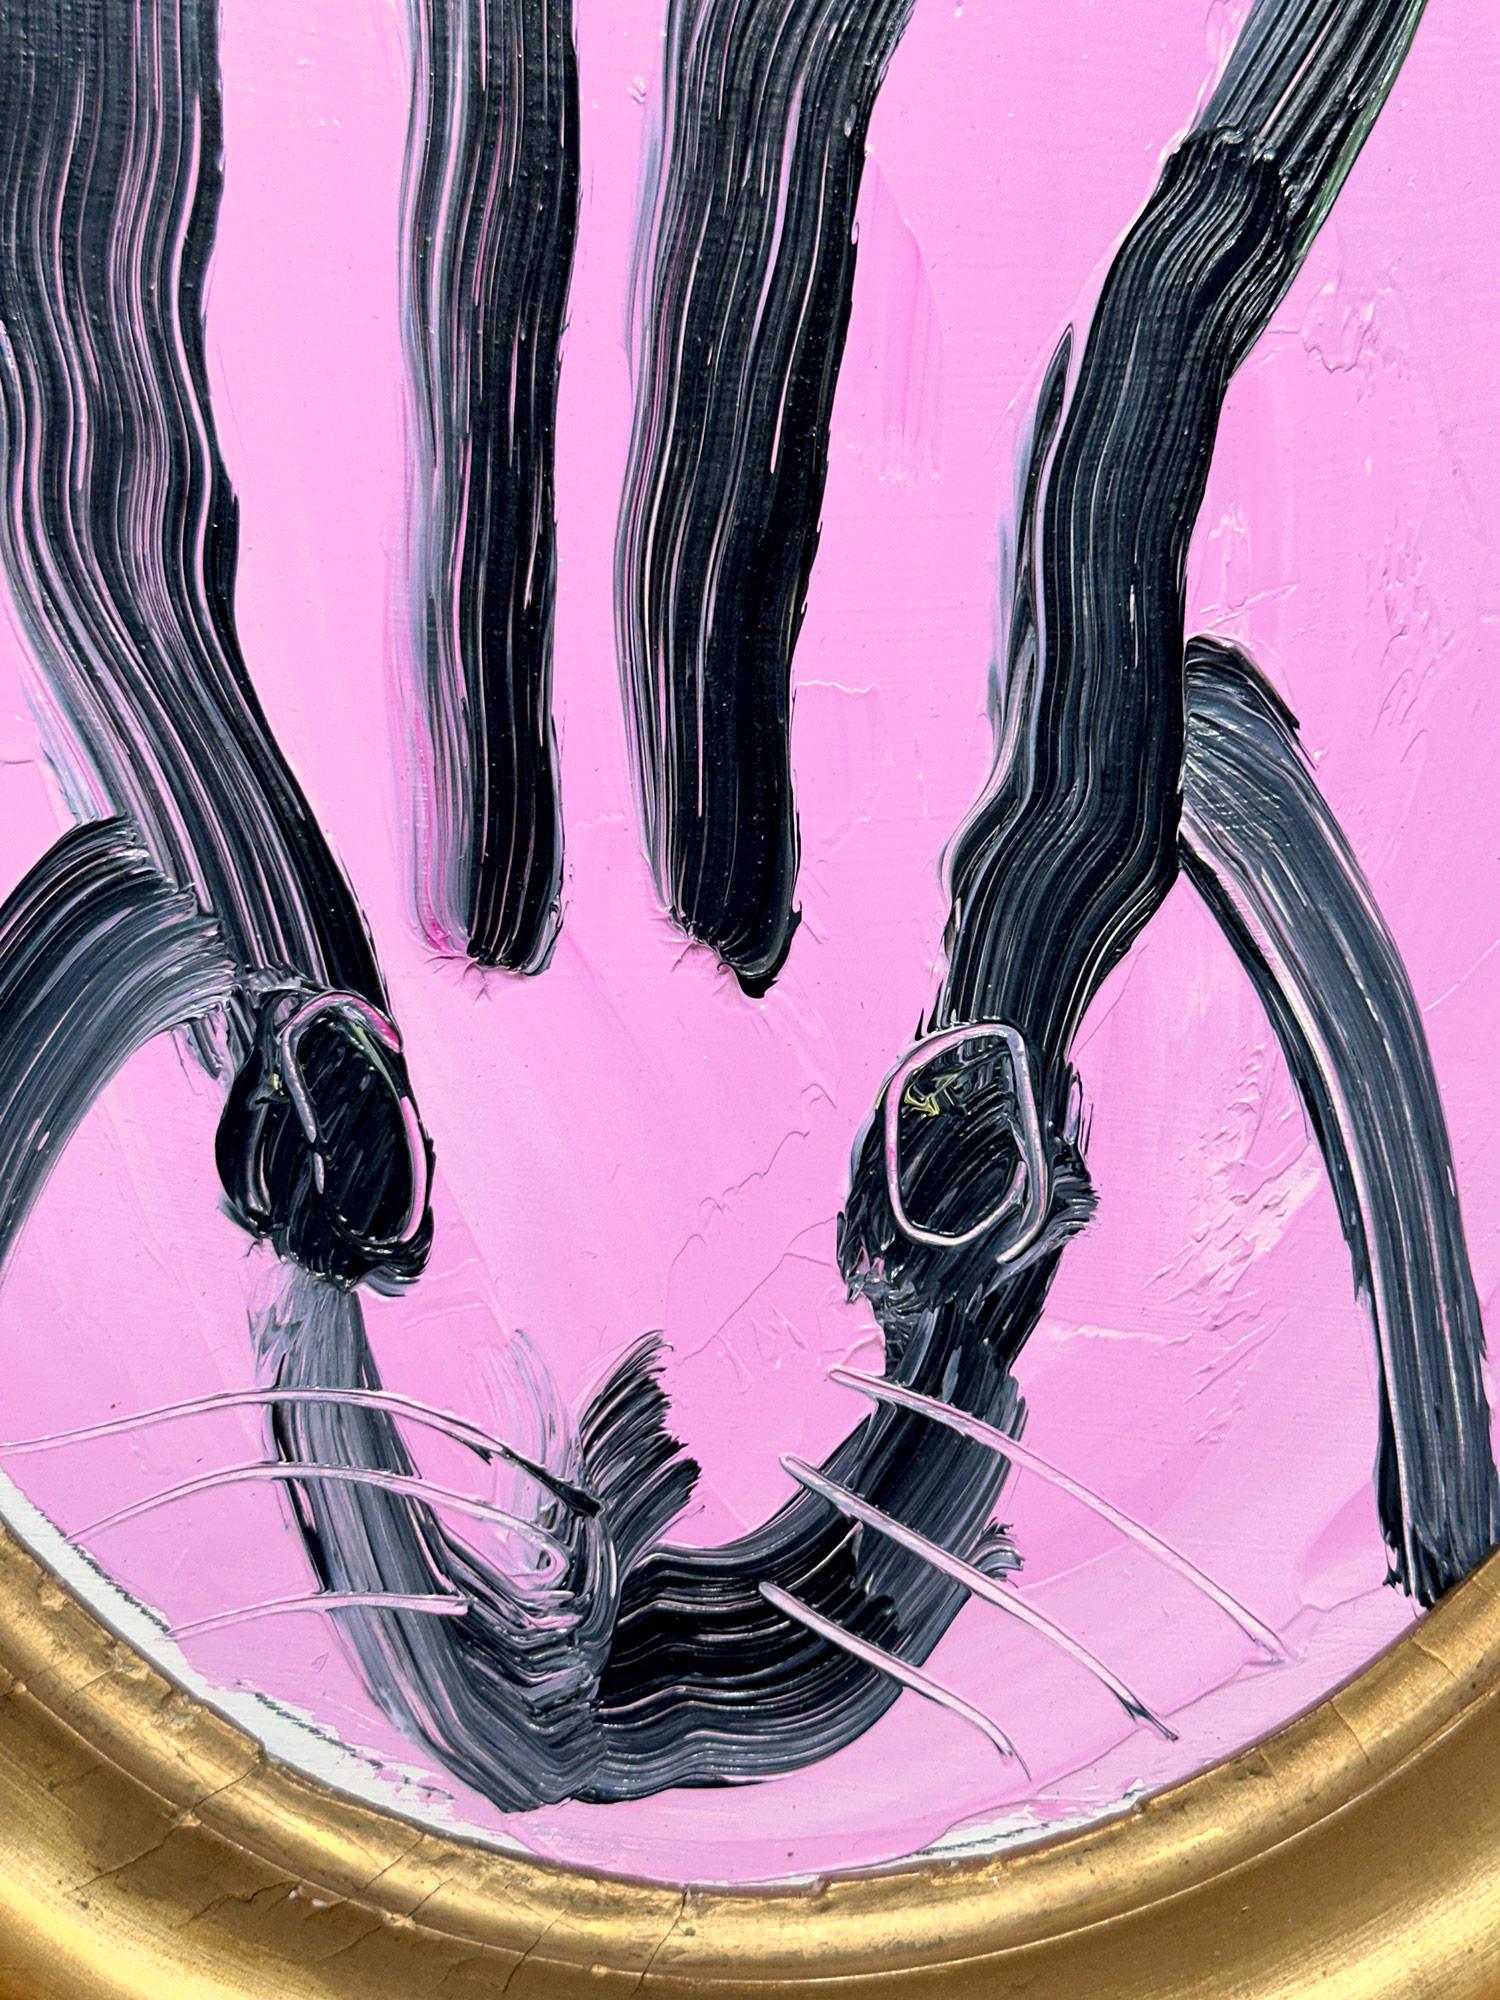 Eine wunderbare Komposition eines der ikonischsten Themen von Slonem, nämlich Hasen. Dieses Werk zeigt eine gestische Figur eines schwarzen Hasen auf lavendelfarbenem Hintergrund mit dickem Farbauftrag. Es ist in einem wunderschönen antiken ovalen